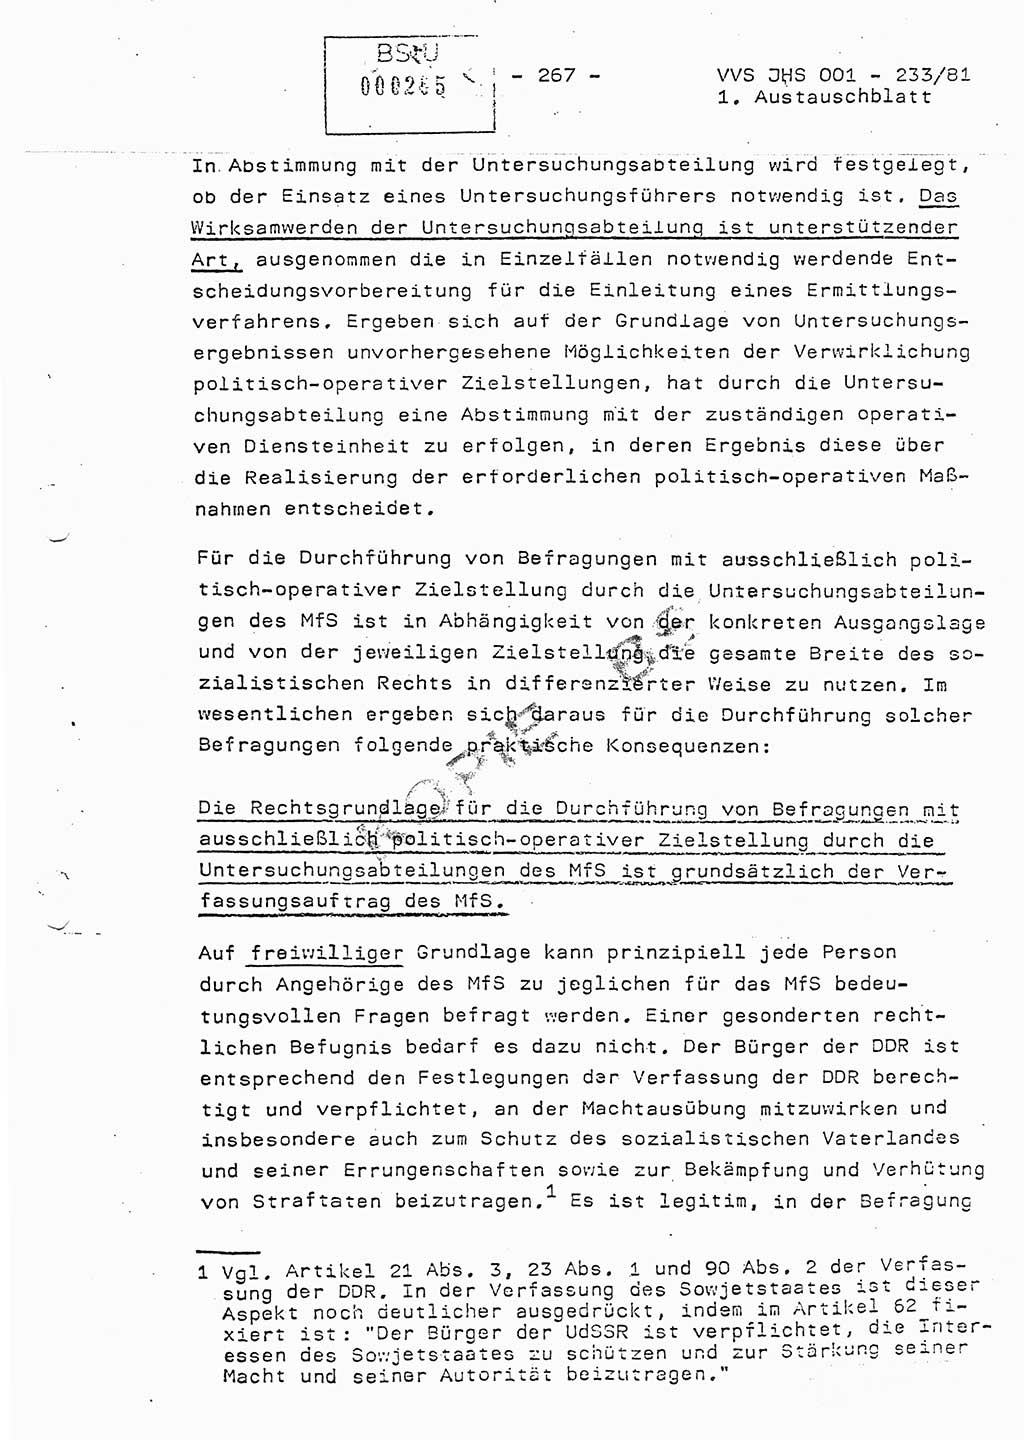 Dissertation Oberstleutnant Horst Zank (JHS), Oberstleutnant Dr. Karl-Heinz Knoblauch (JHS), Oberstleutnant Gustav-Adolf Kowalewski (HA Ⅸ), Oberstleutnant Wolfgang Plötner (HA Ⅸ), Ministerium für Staatssicherheit (MfS) [Deutsche Demokratische Republik (DDR)], Juristische Hochschule (JHS), Vertrauliche Verschlußsache (VVS) o001-233/81, Potsdam 1981, Blatt 267 (Diss. MfS DDR JHS VVS o001-233/81 1981, Bl. 267)